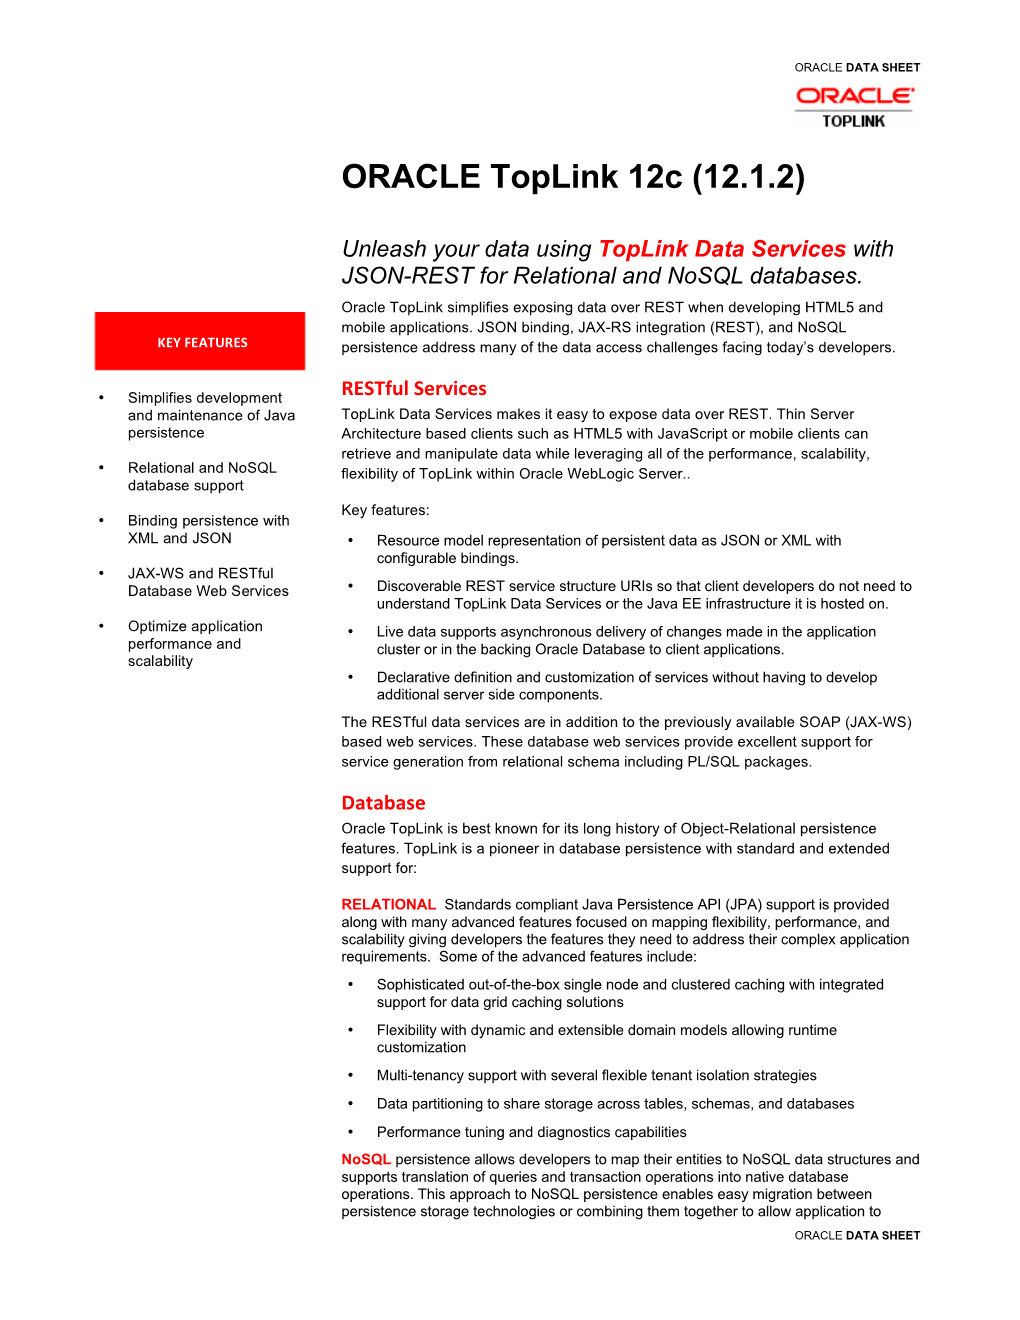 ORACLE Toplink 12C (12.1.2)